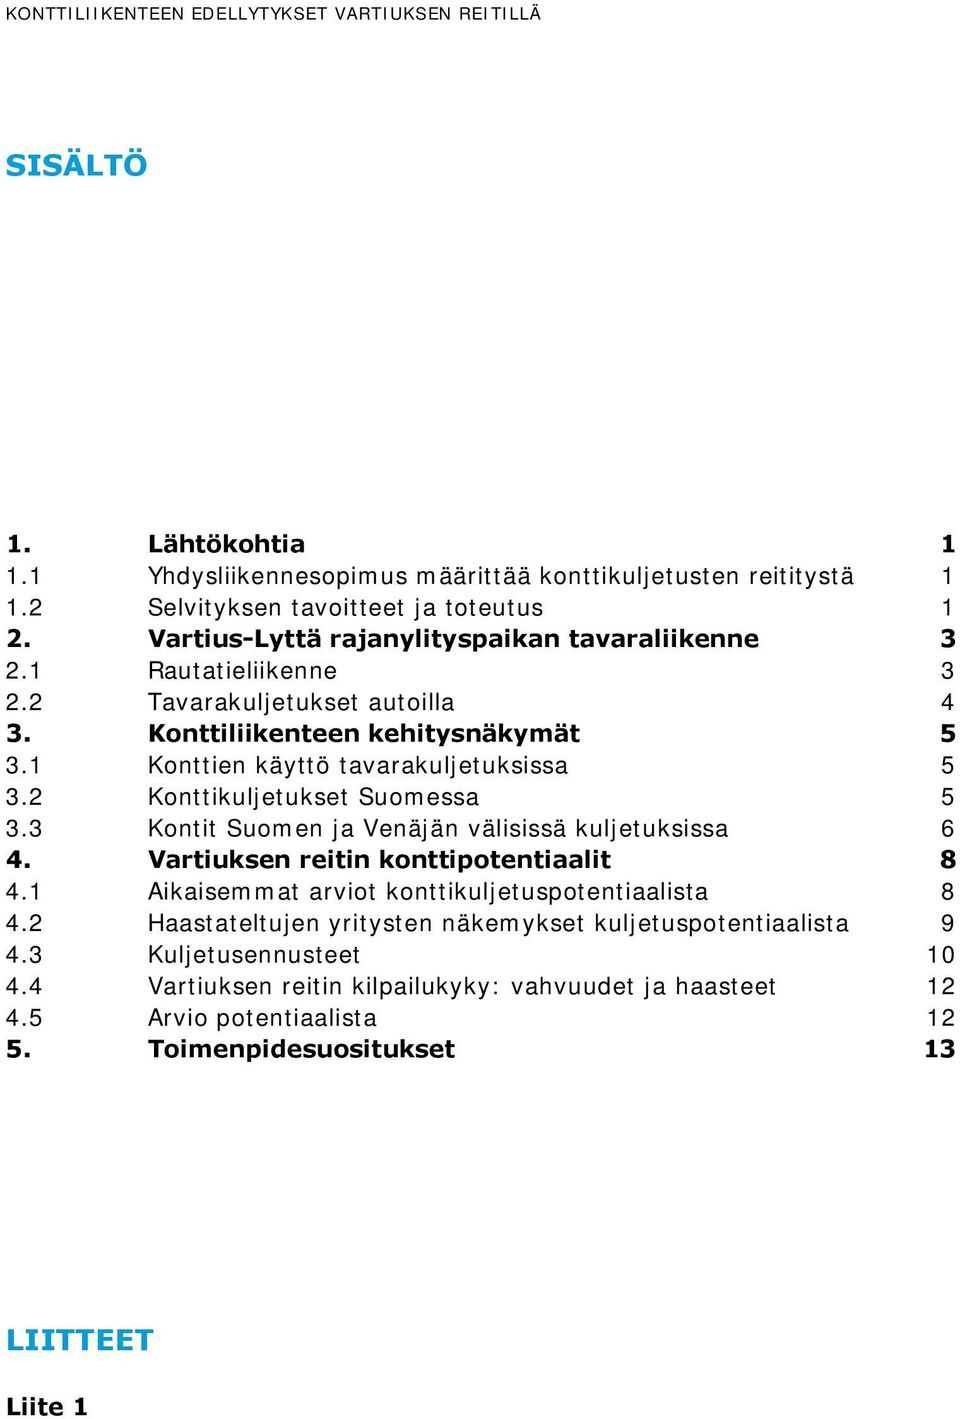 2 Konttikuljetukset Suomessa 5 3.3 Kontit Suomen ja Venäjän välisissä kuljetuksissa 6 4. Vartiuksen reitin konttipotentiaalit 8 4.1 Aikaisemmat arviot konttikuljetuspotentiaalista 8 4.